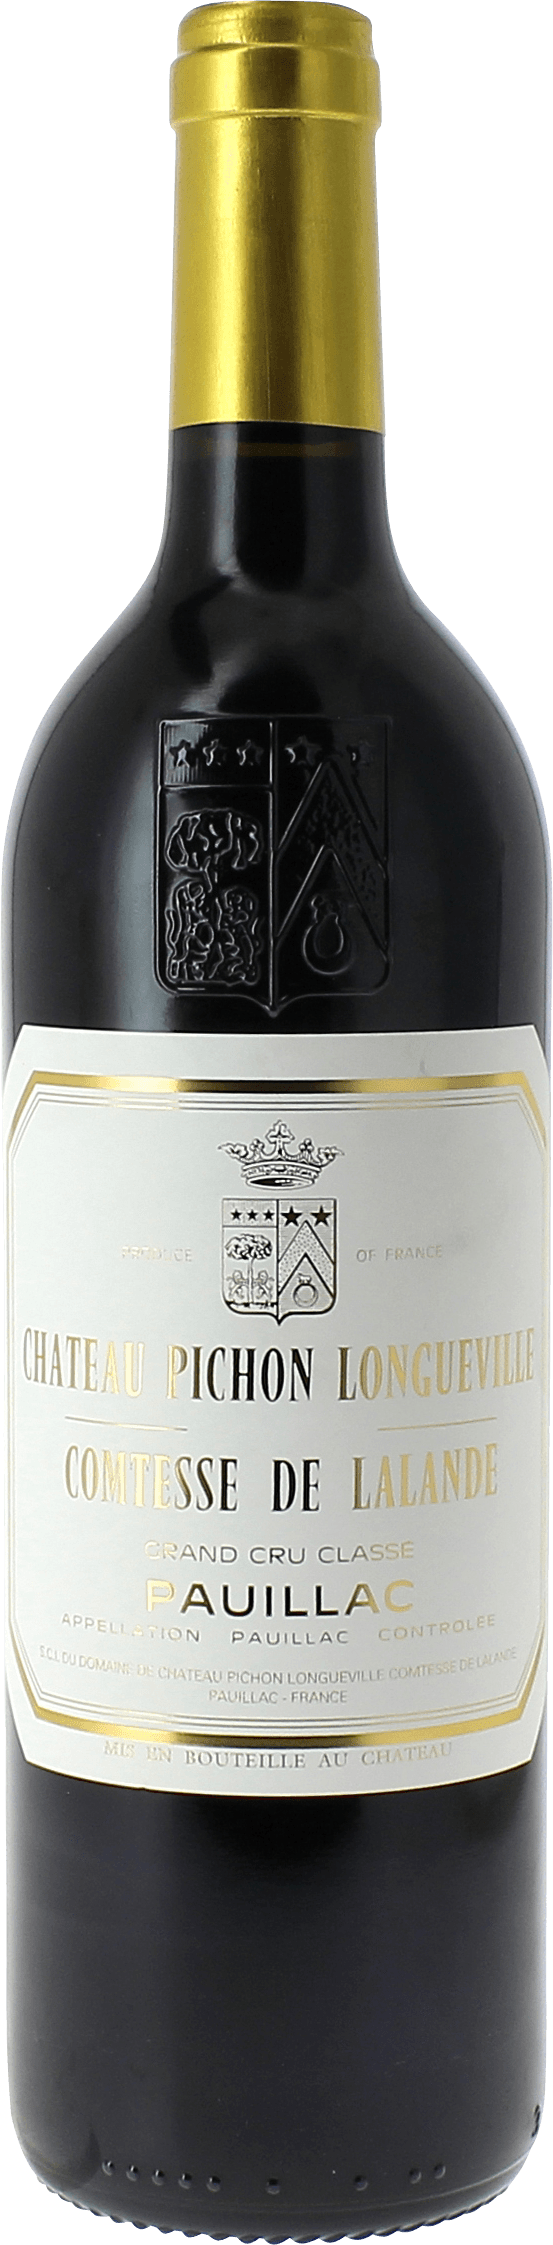 Pichon comtesse de lalande 2020 2me Grand cru class Pauillac, Bordeaux rouge